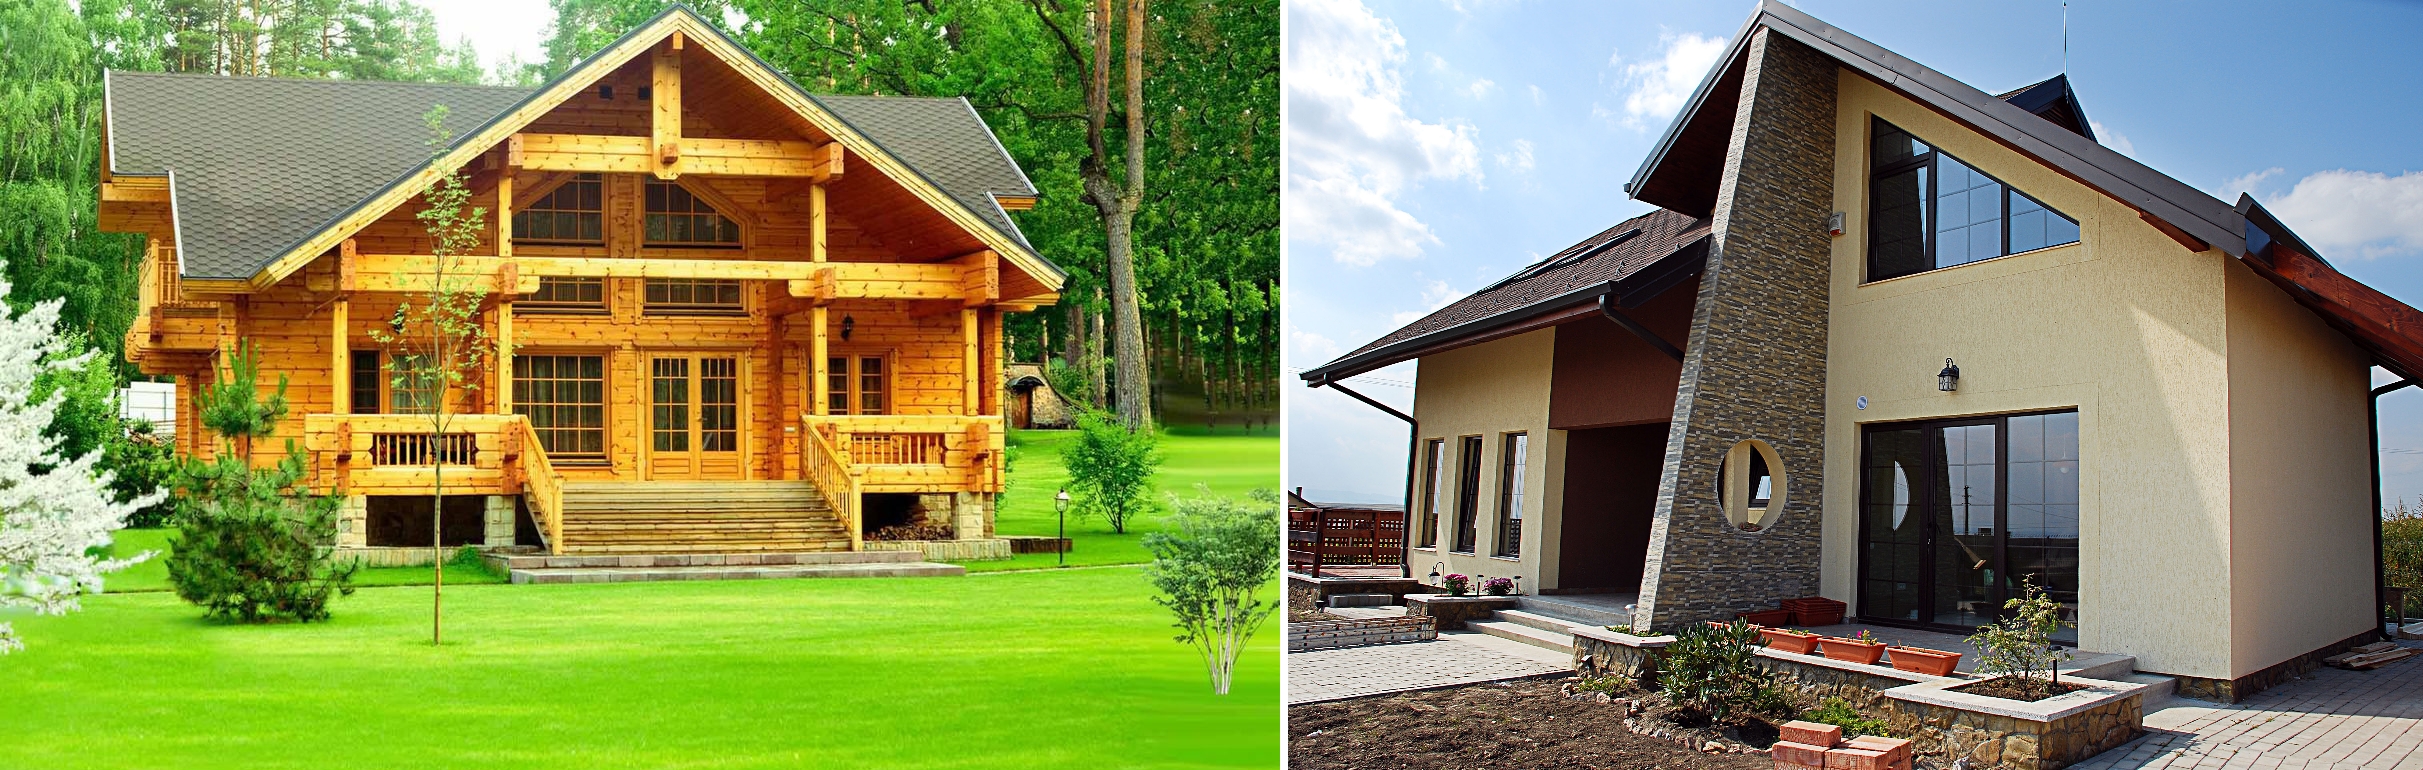 Каркасный дом и дом из деревянного бруса - делаем выбор. | karkasnydom